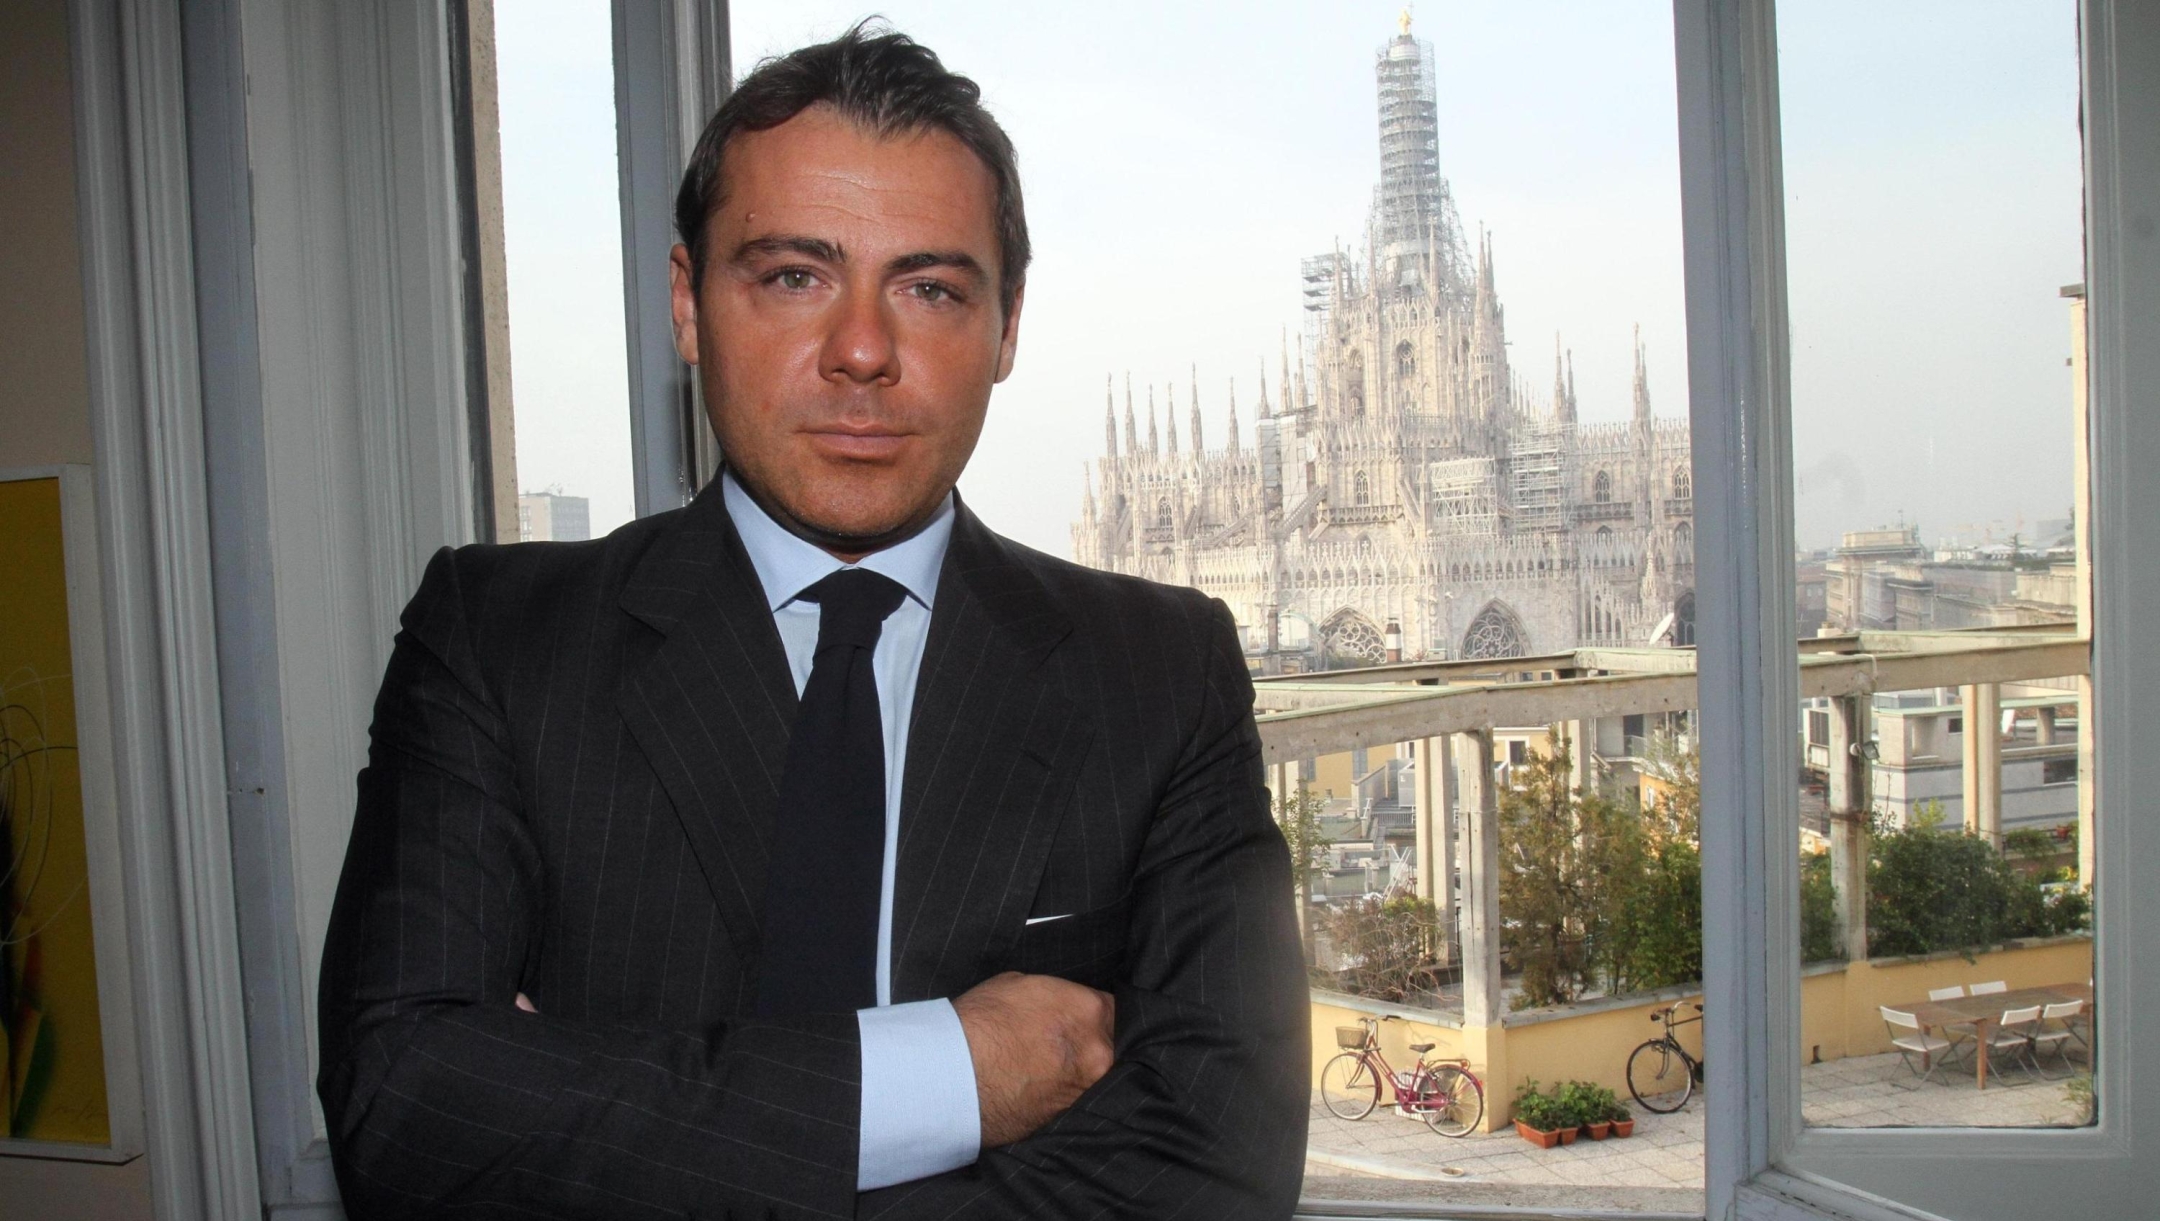 Il finanziere Alessandro Proto, candidato alle primarie del Pdl, posa per una foto nel suo studio di Milano, 23 novembre 2012. ANSA / MATTEO BAZZI